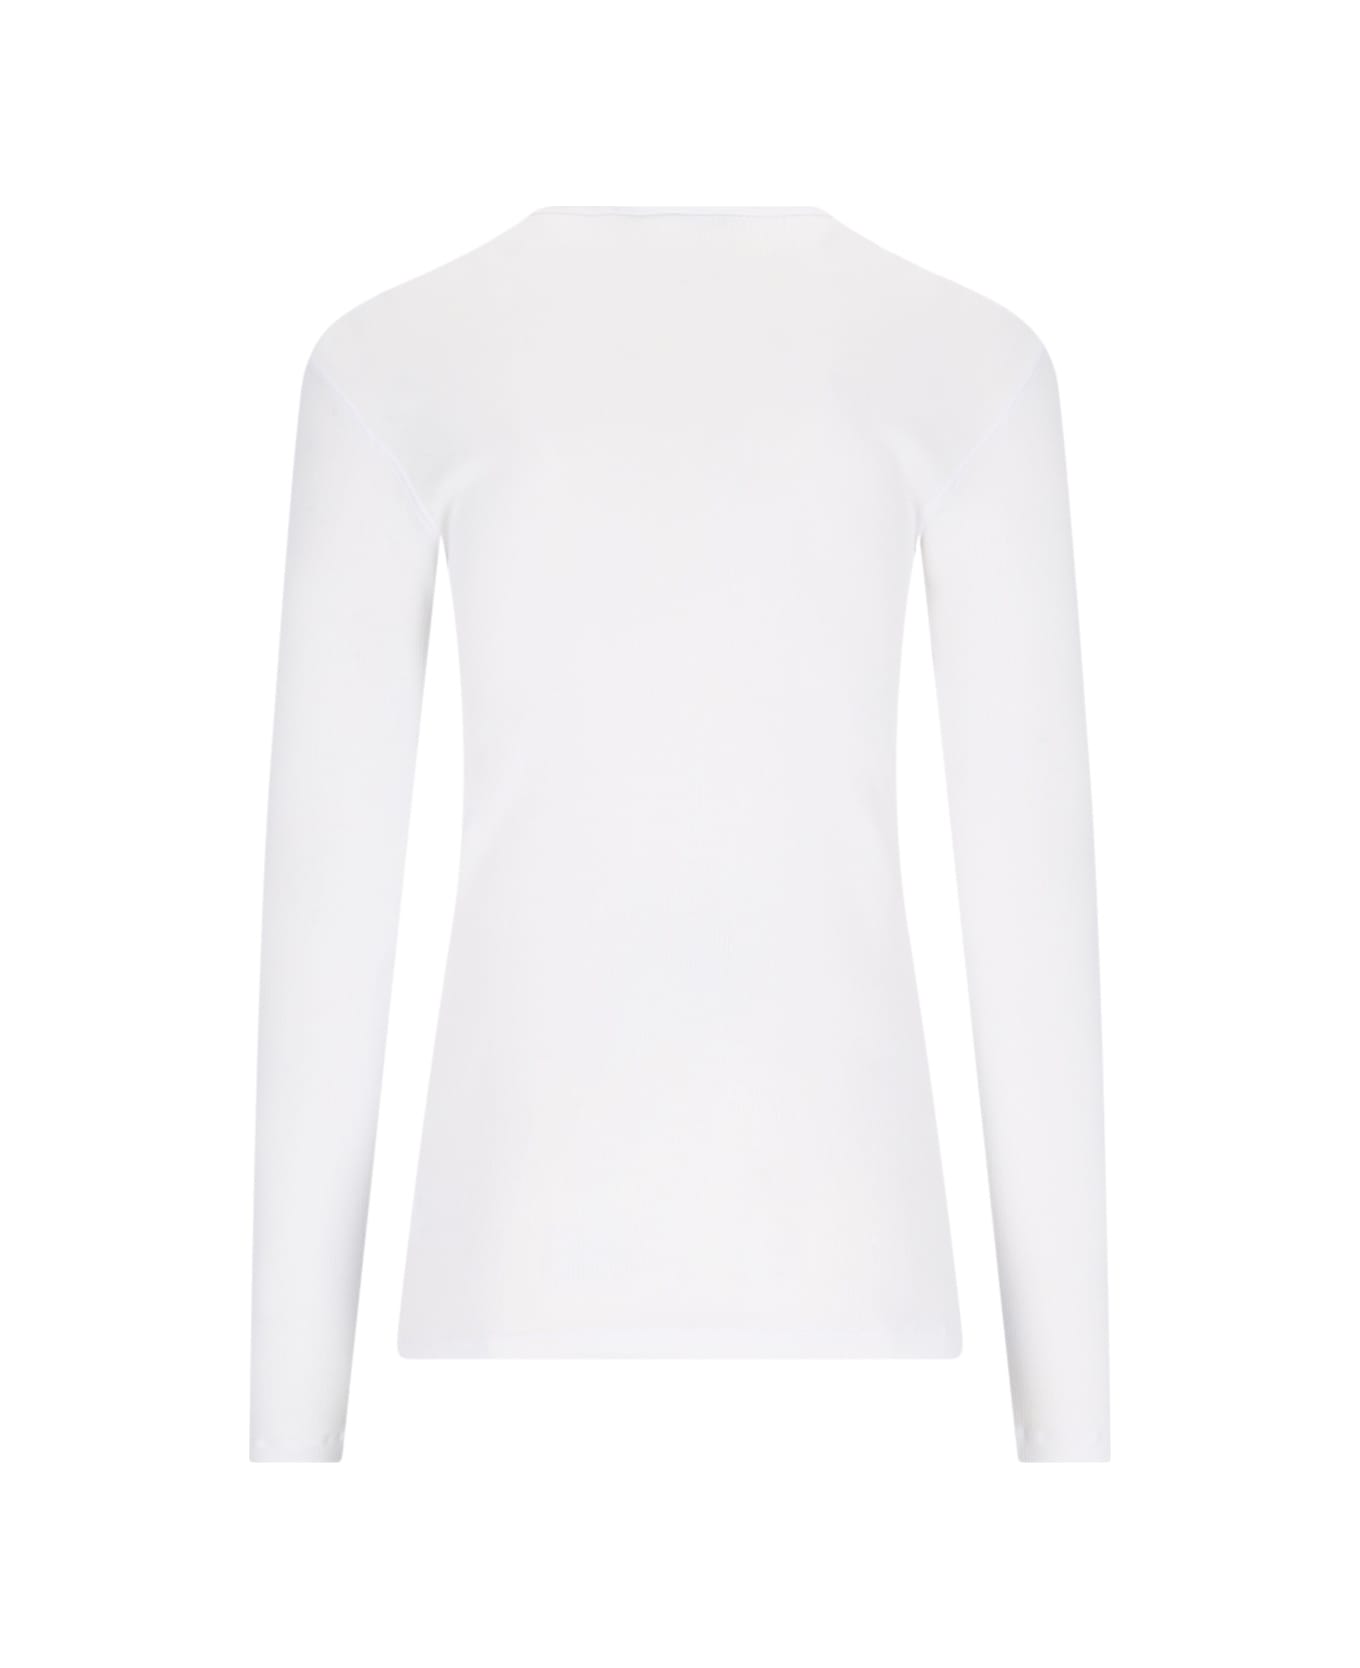 Dolce & Gabbana 'serafino' T-shirt - White